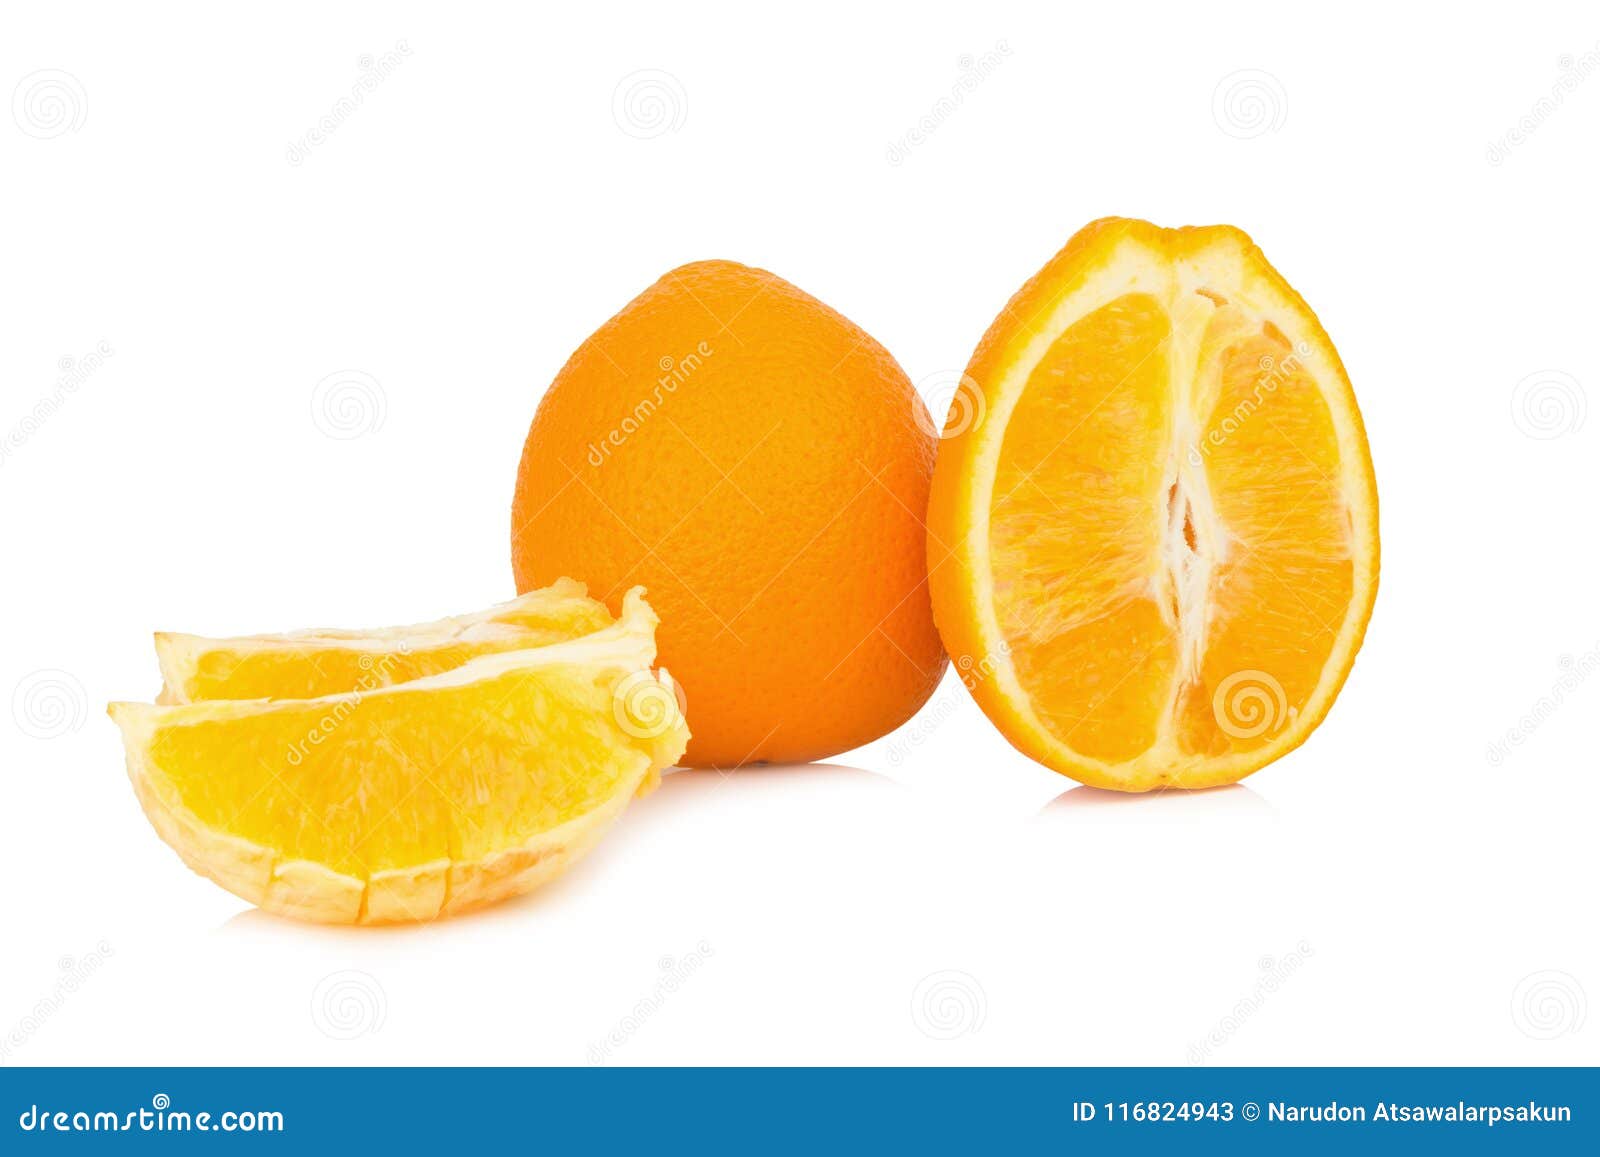 Orange Half Slice Isolated On White Background Stock Image Image Of